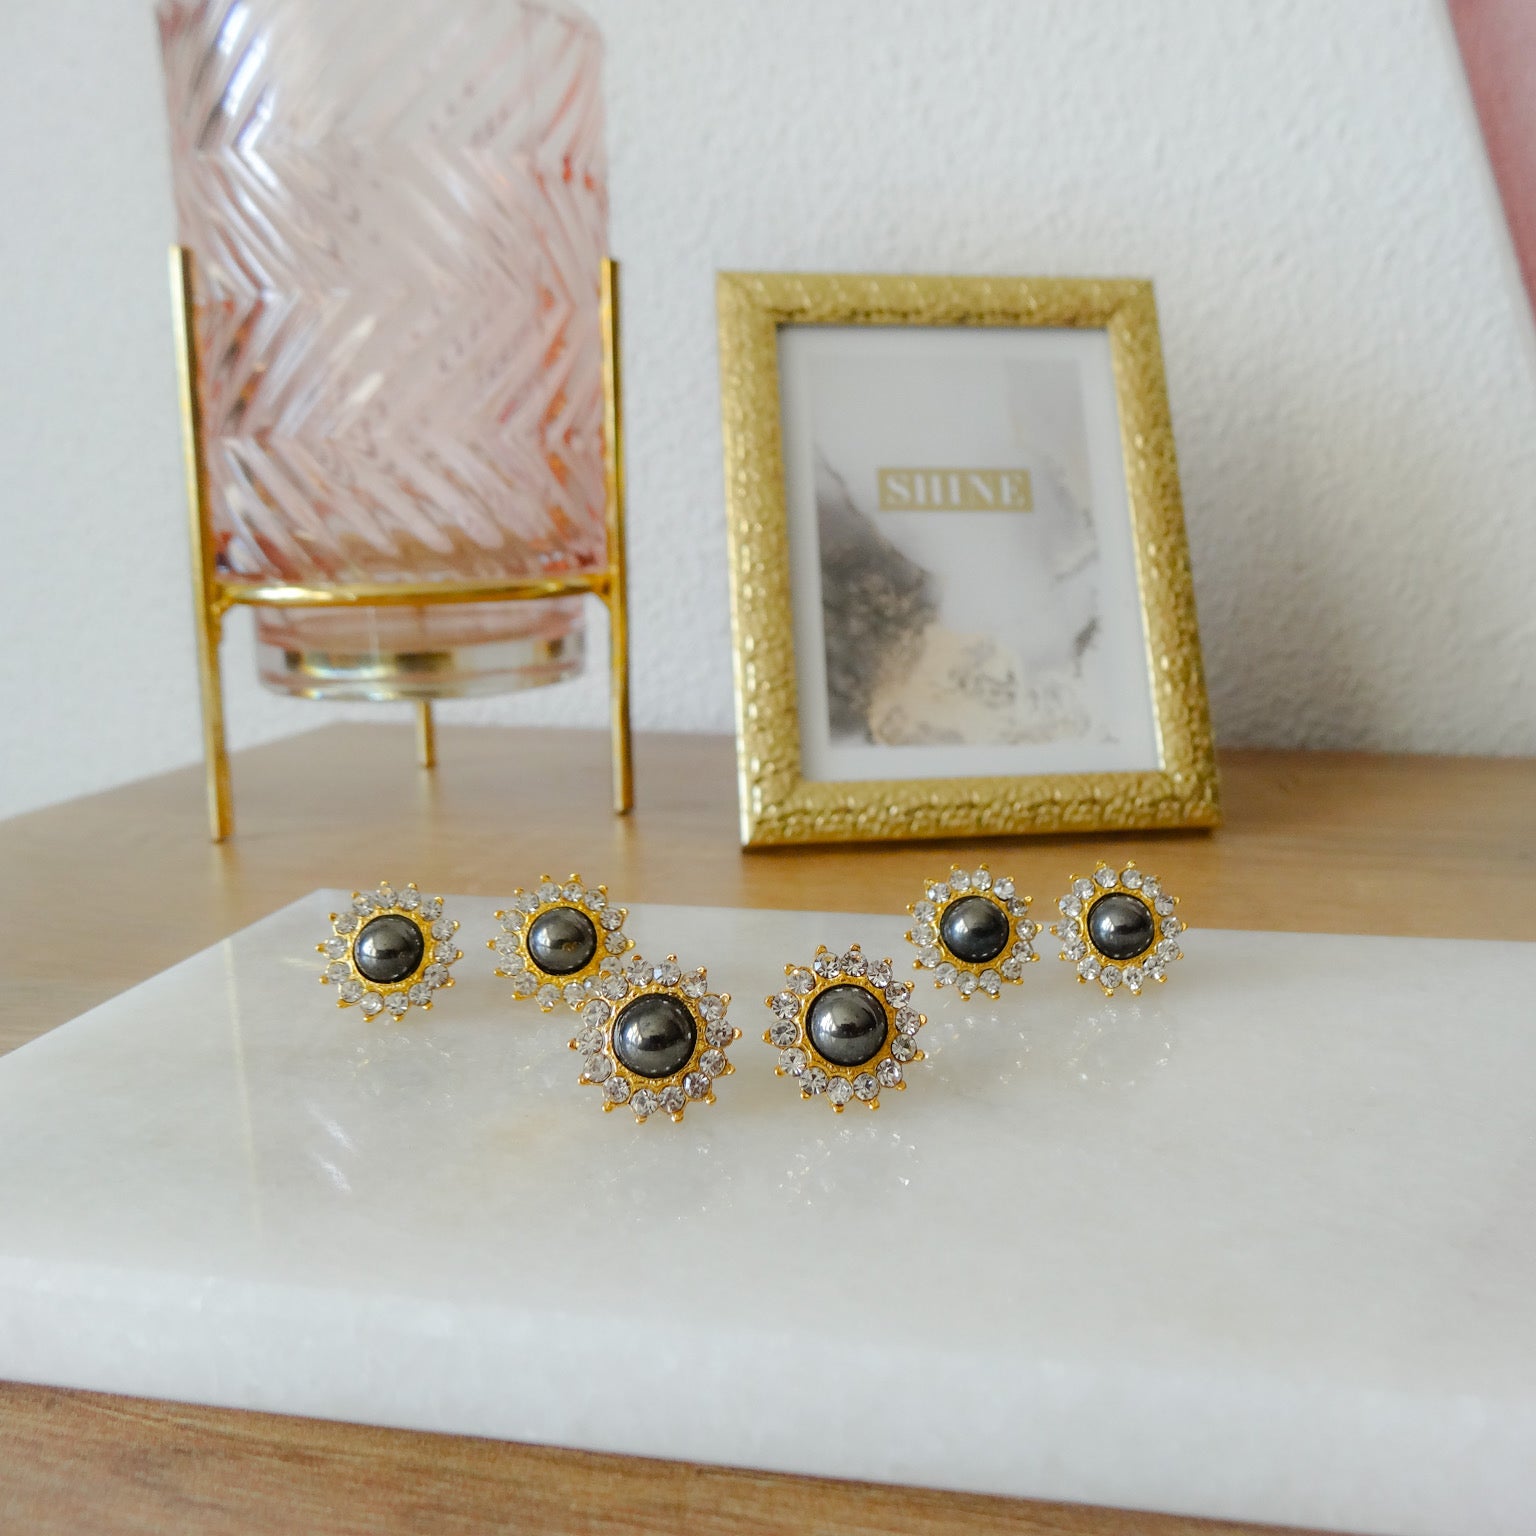 Gouden dames oorknoppen met witte kristal stenen en grijze loodkristal. De gouden dames oorknoppen hebben een bloem motief.